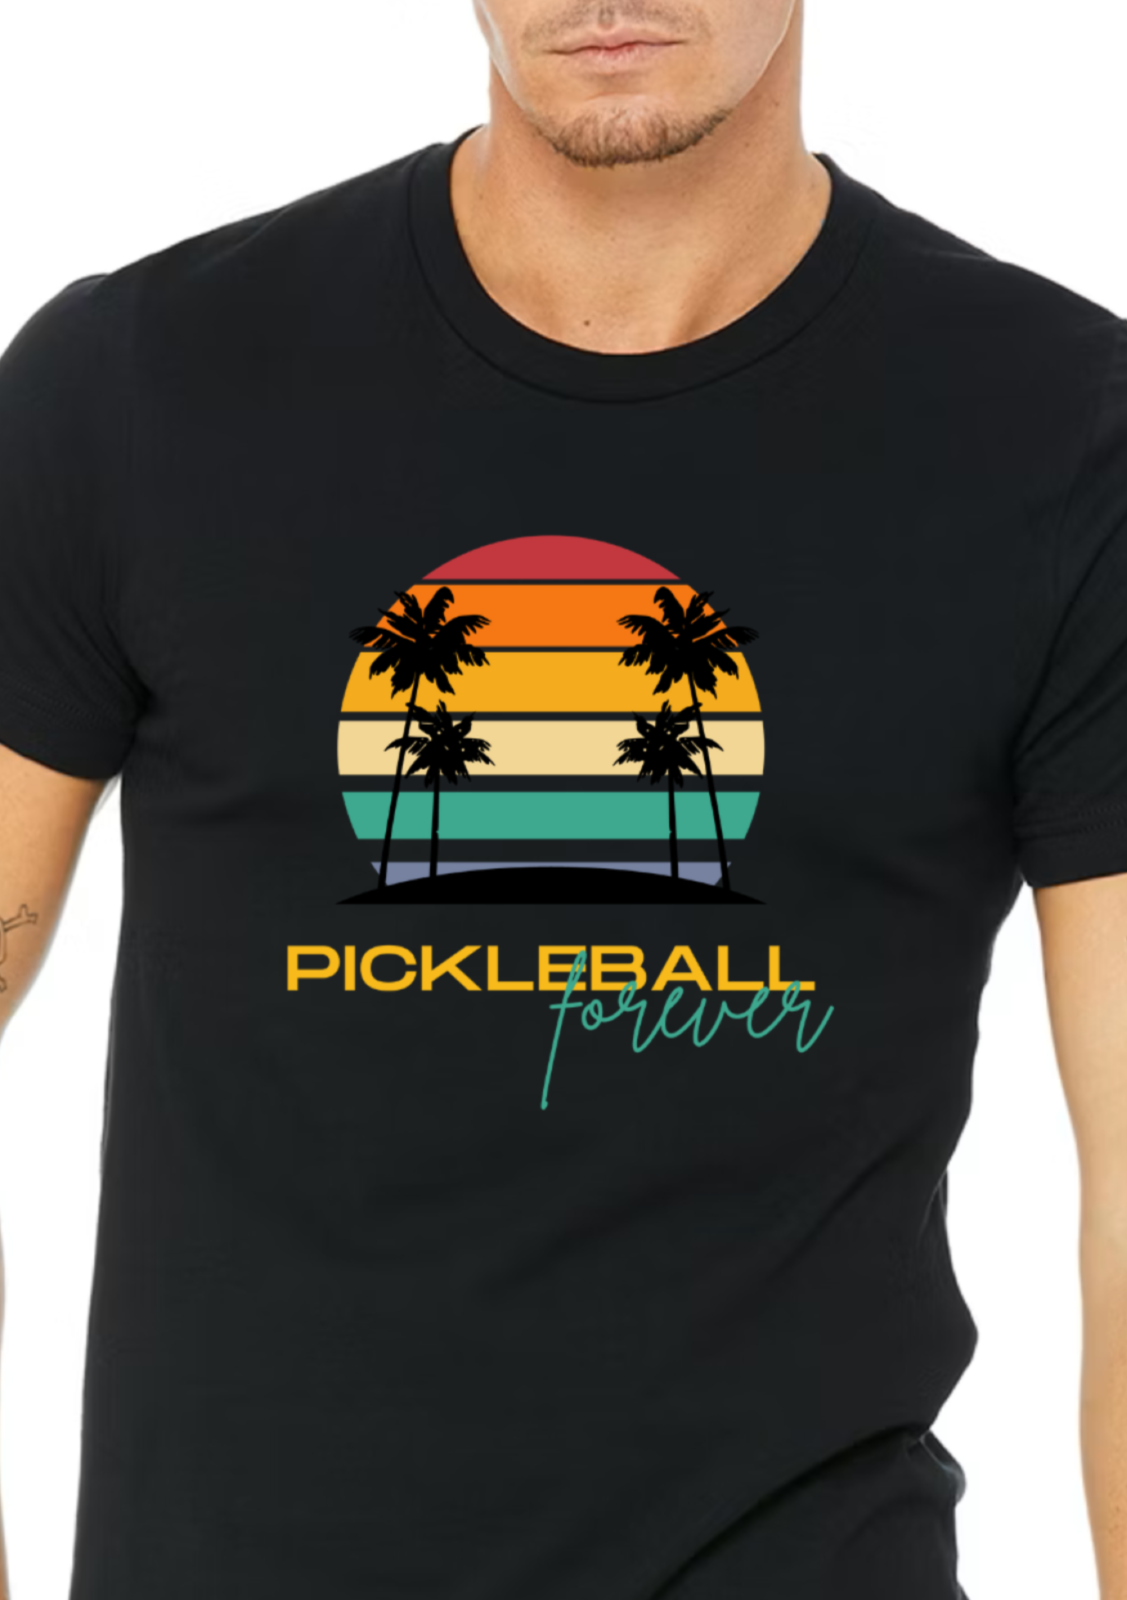 This GORGEOUS sunset Unisex Pickleball Forever Premium Pickleball T-Shirt